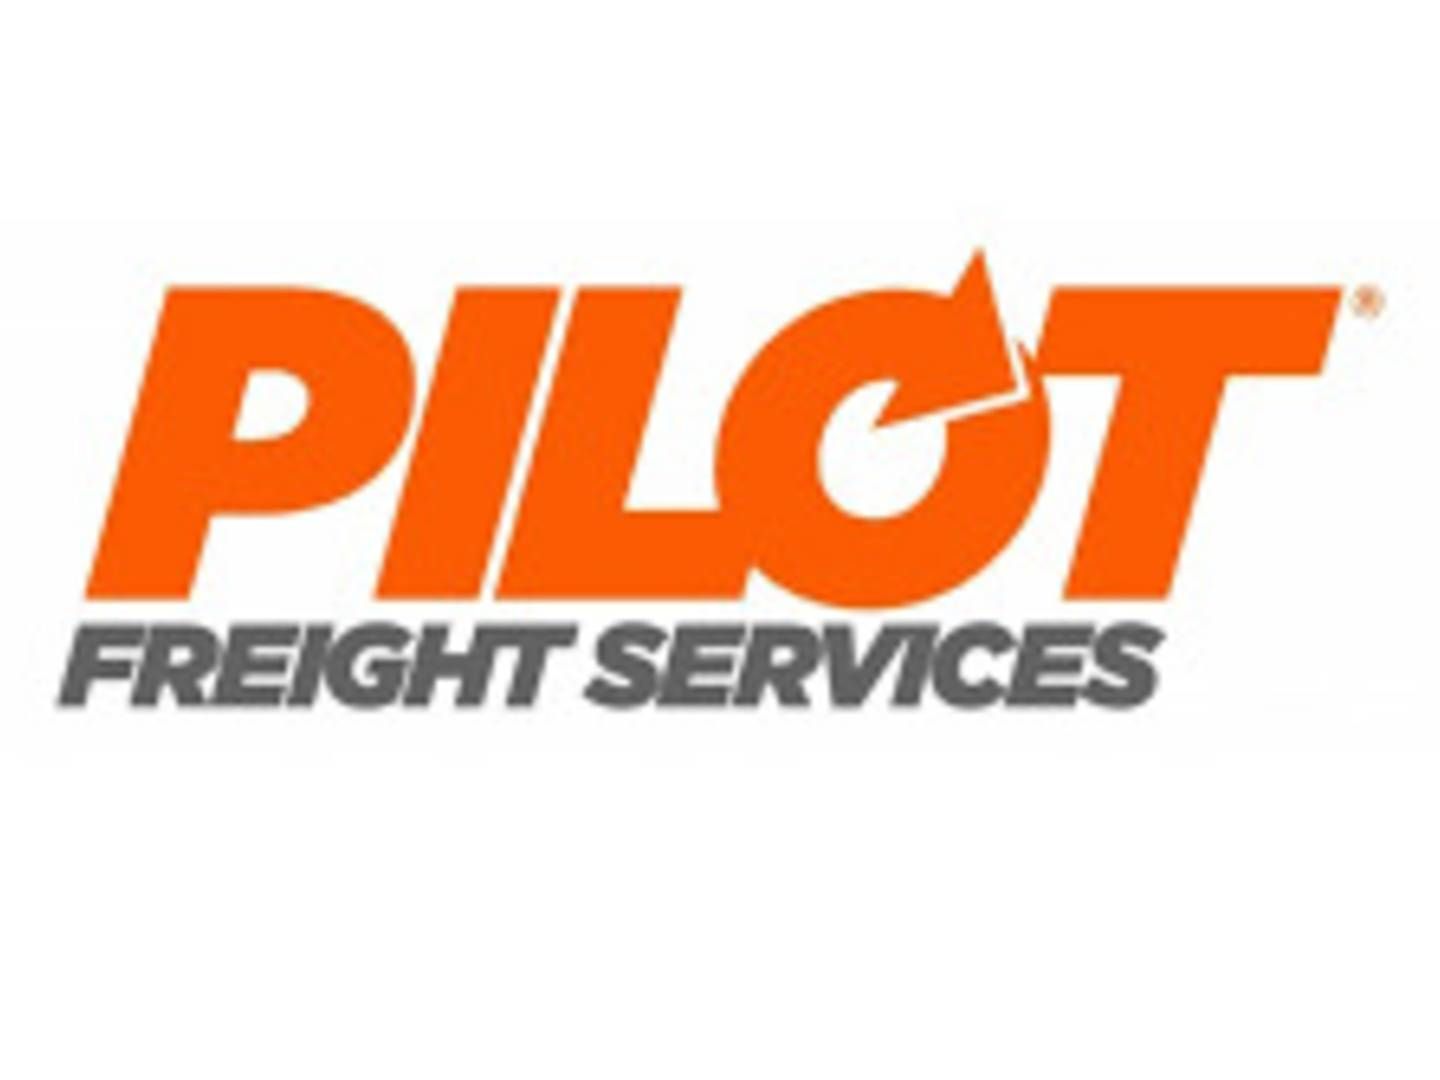 Amerikanske Pilot Freight Services er specialister i pakker på over 70 kg. | Foto: Pilot Freight Services/PR